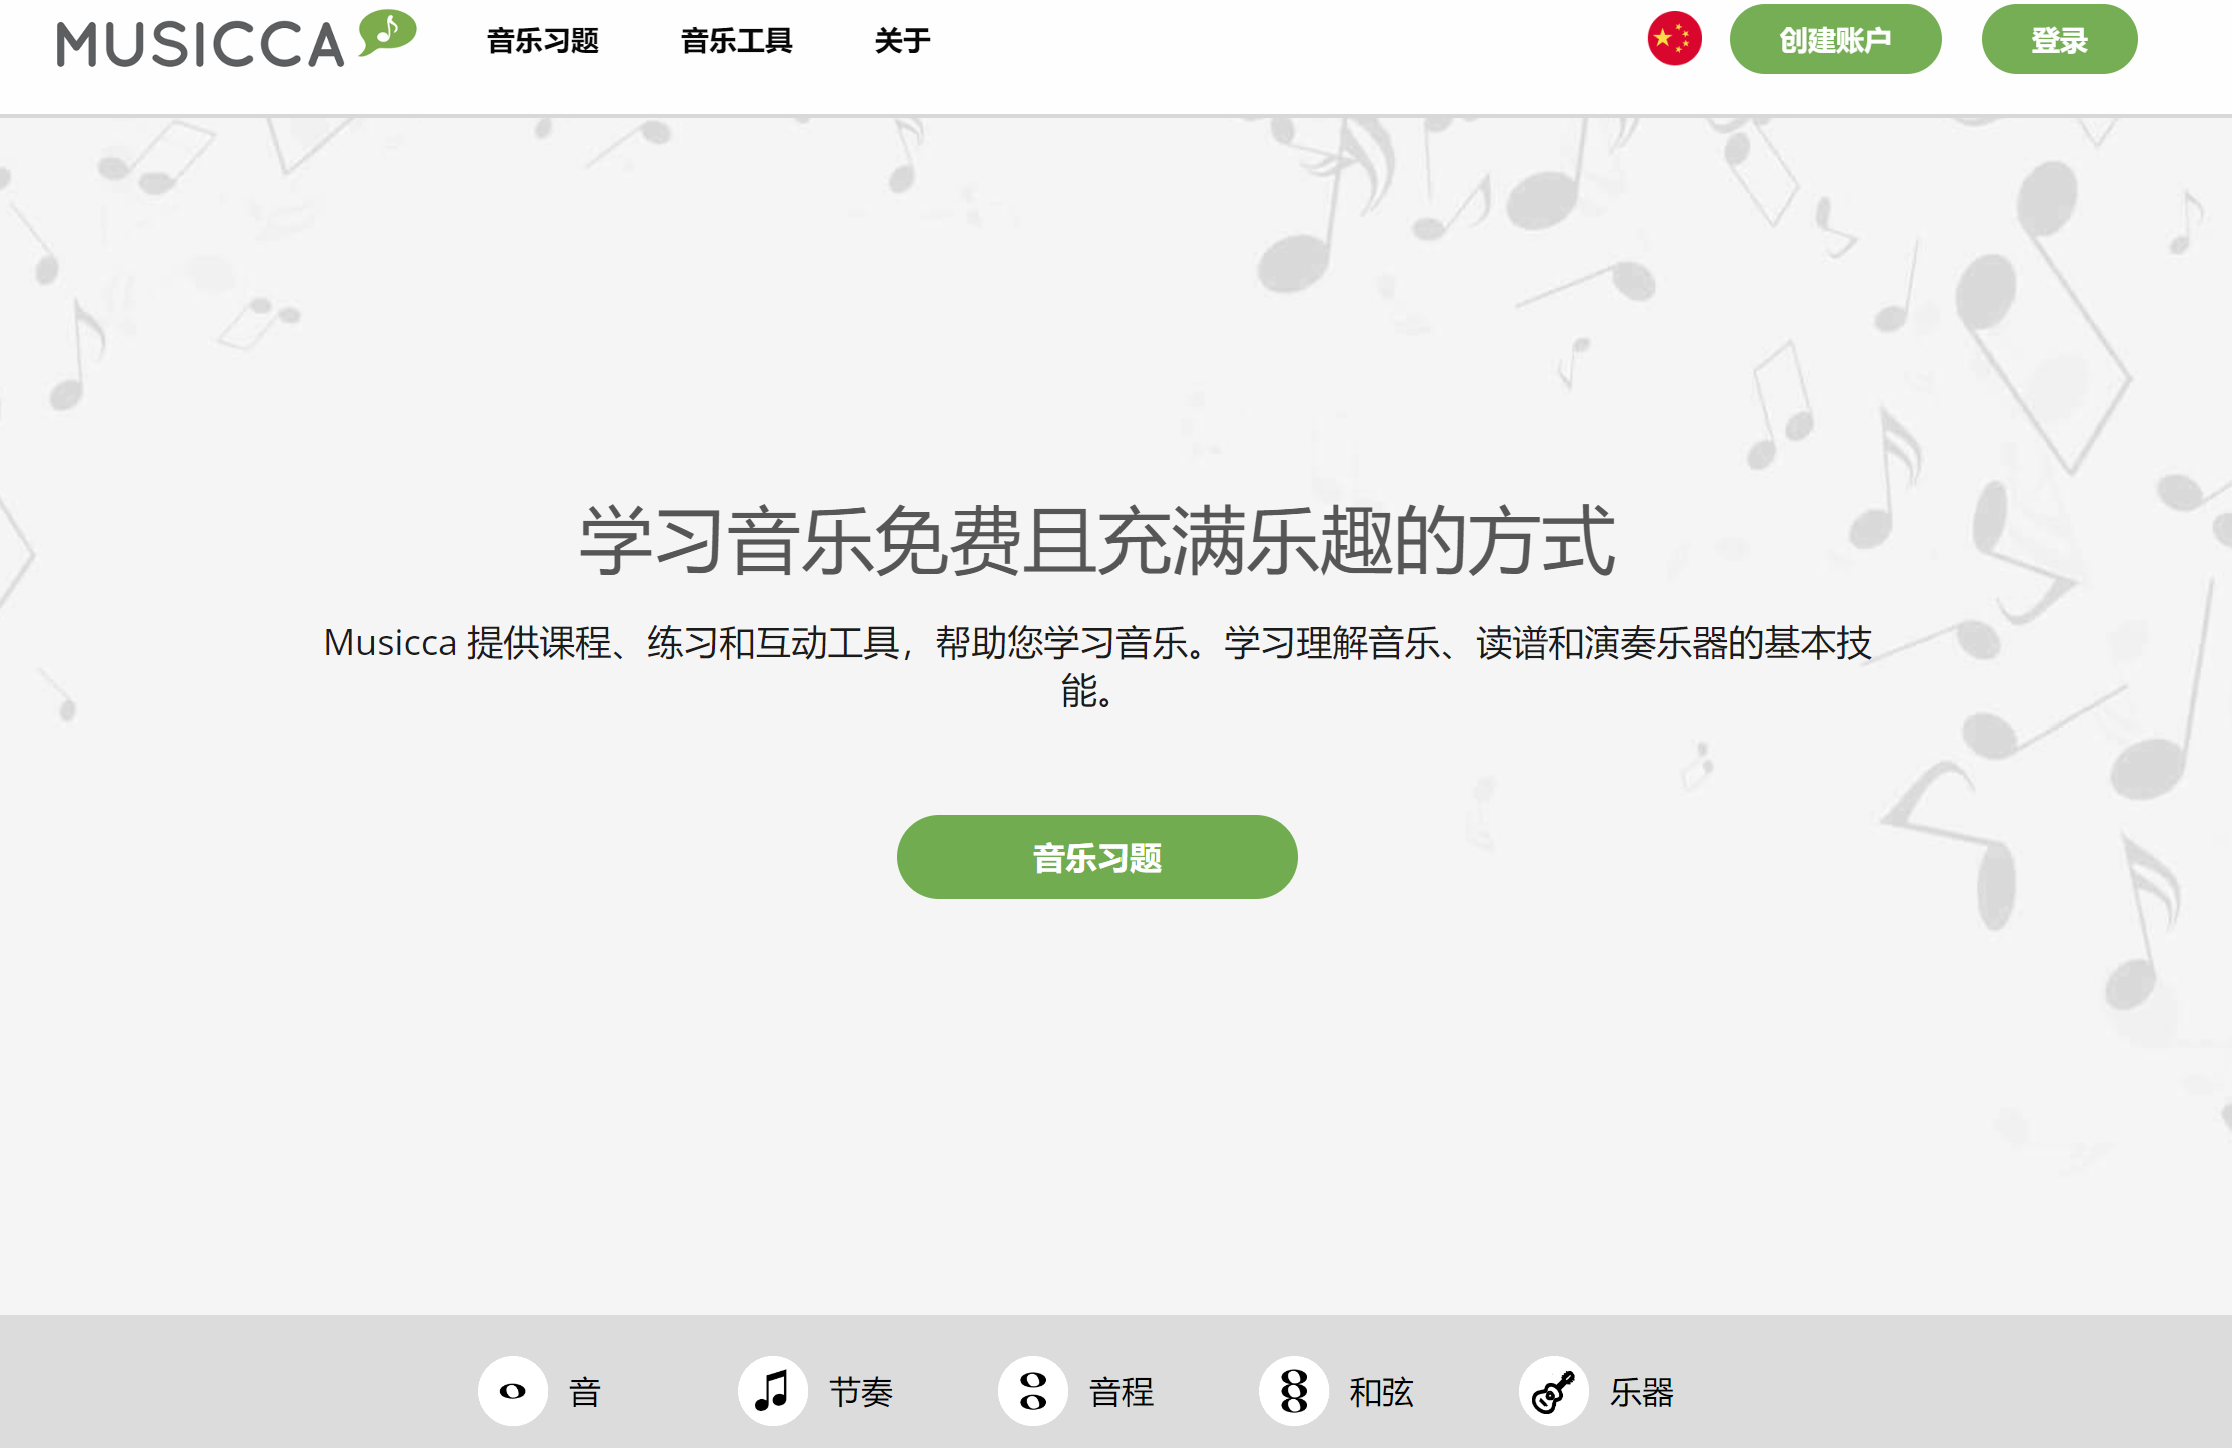 免费且充满乐趣音乐学习工具平台-Musicca